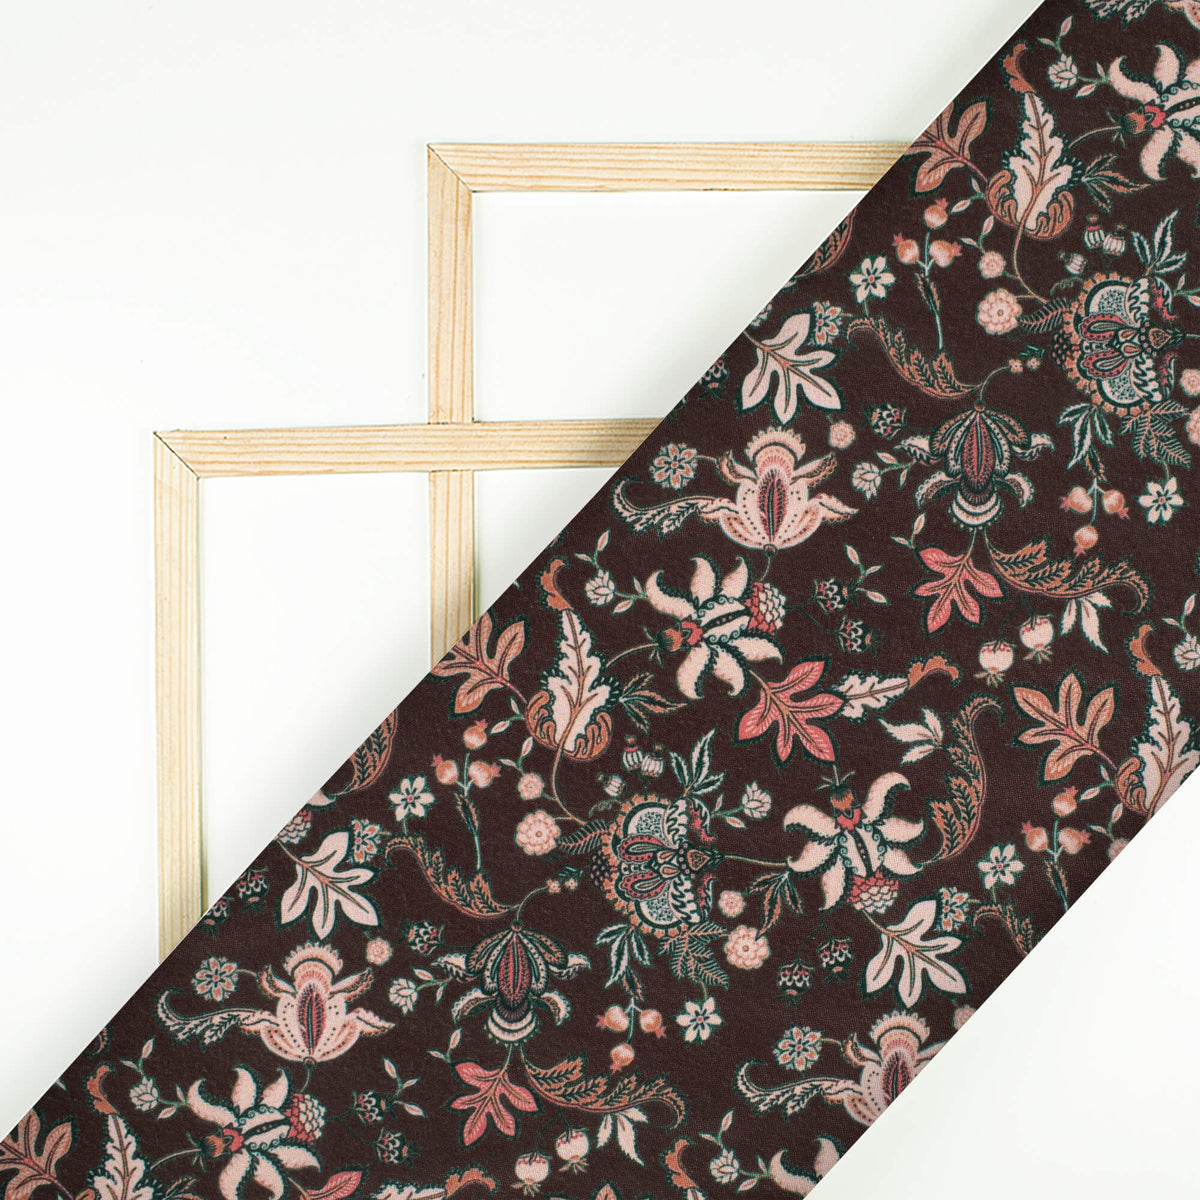 Umber Brown And Beige Floral Pattern Digital Print Crepe Silk Fabric